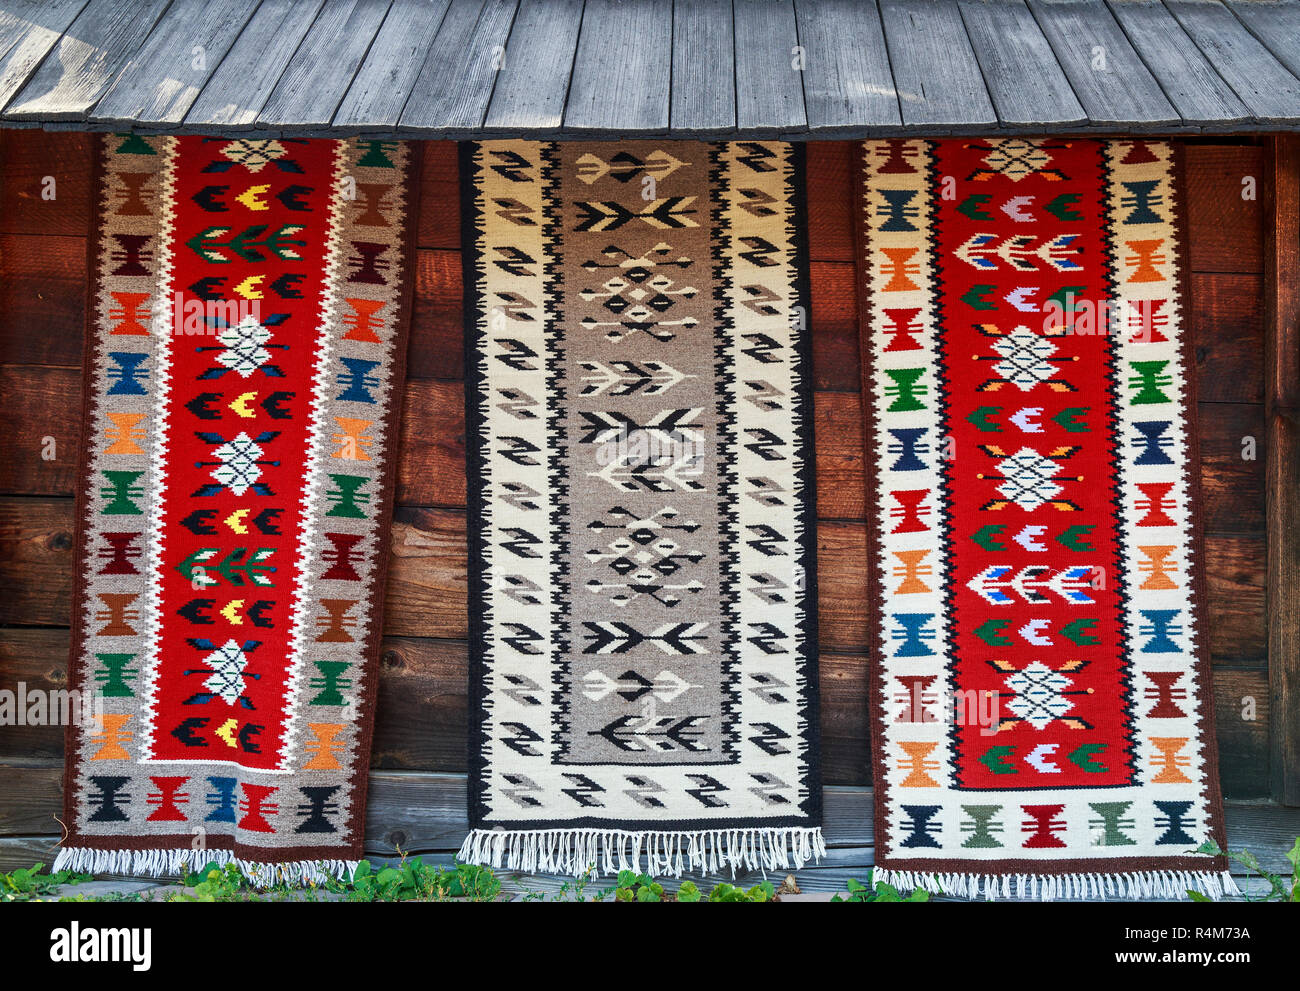 Traditionelle handgefertigte Teppiche aus der Bukowina mit verschiedenen Farben und Zeichnungen. Rumänische Teppiche aus Präsentation Stockfoto